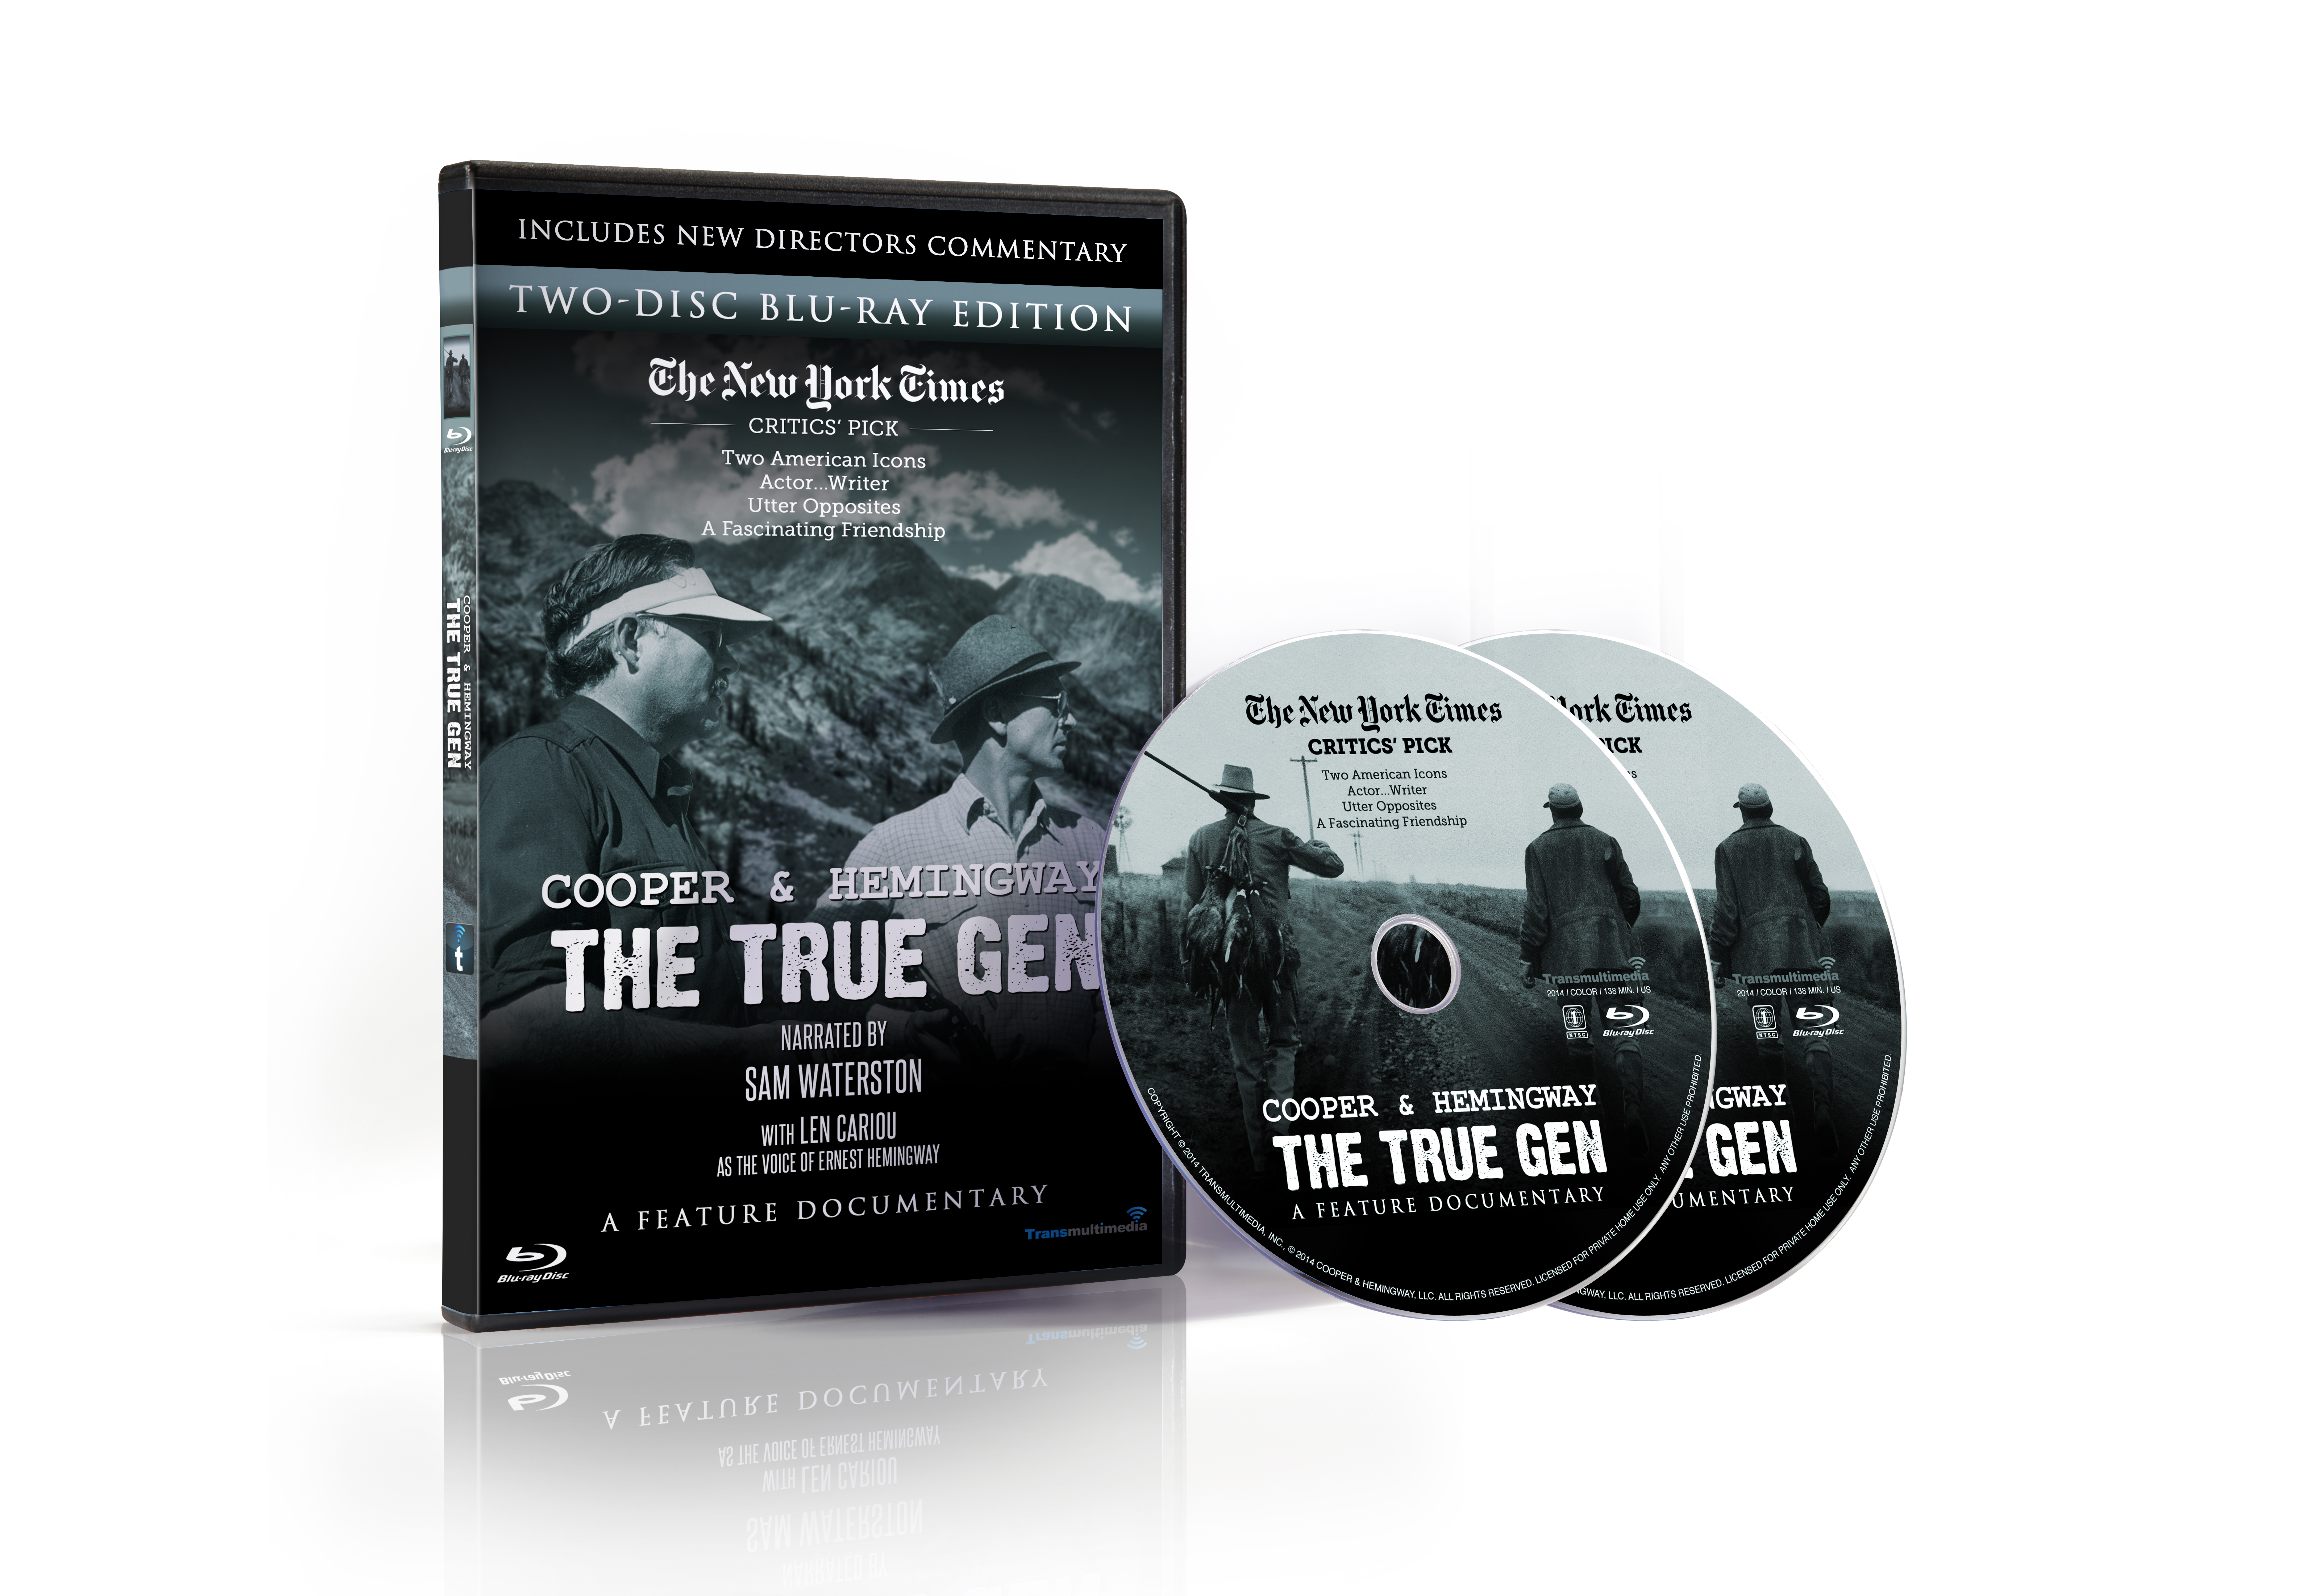 New Release: Special 2 Disc Blu-ray Cooper & Hemingway: The True Gen